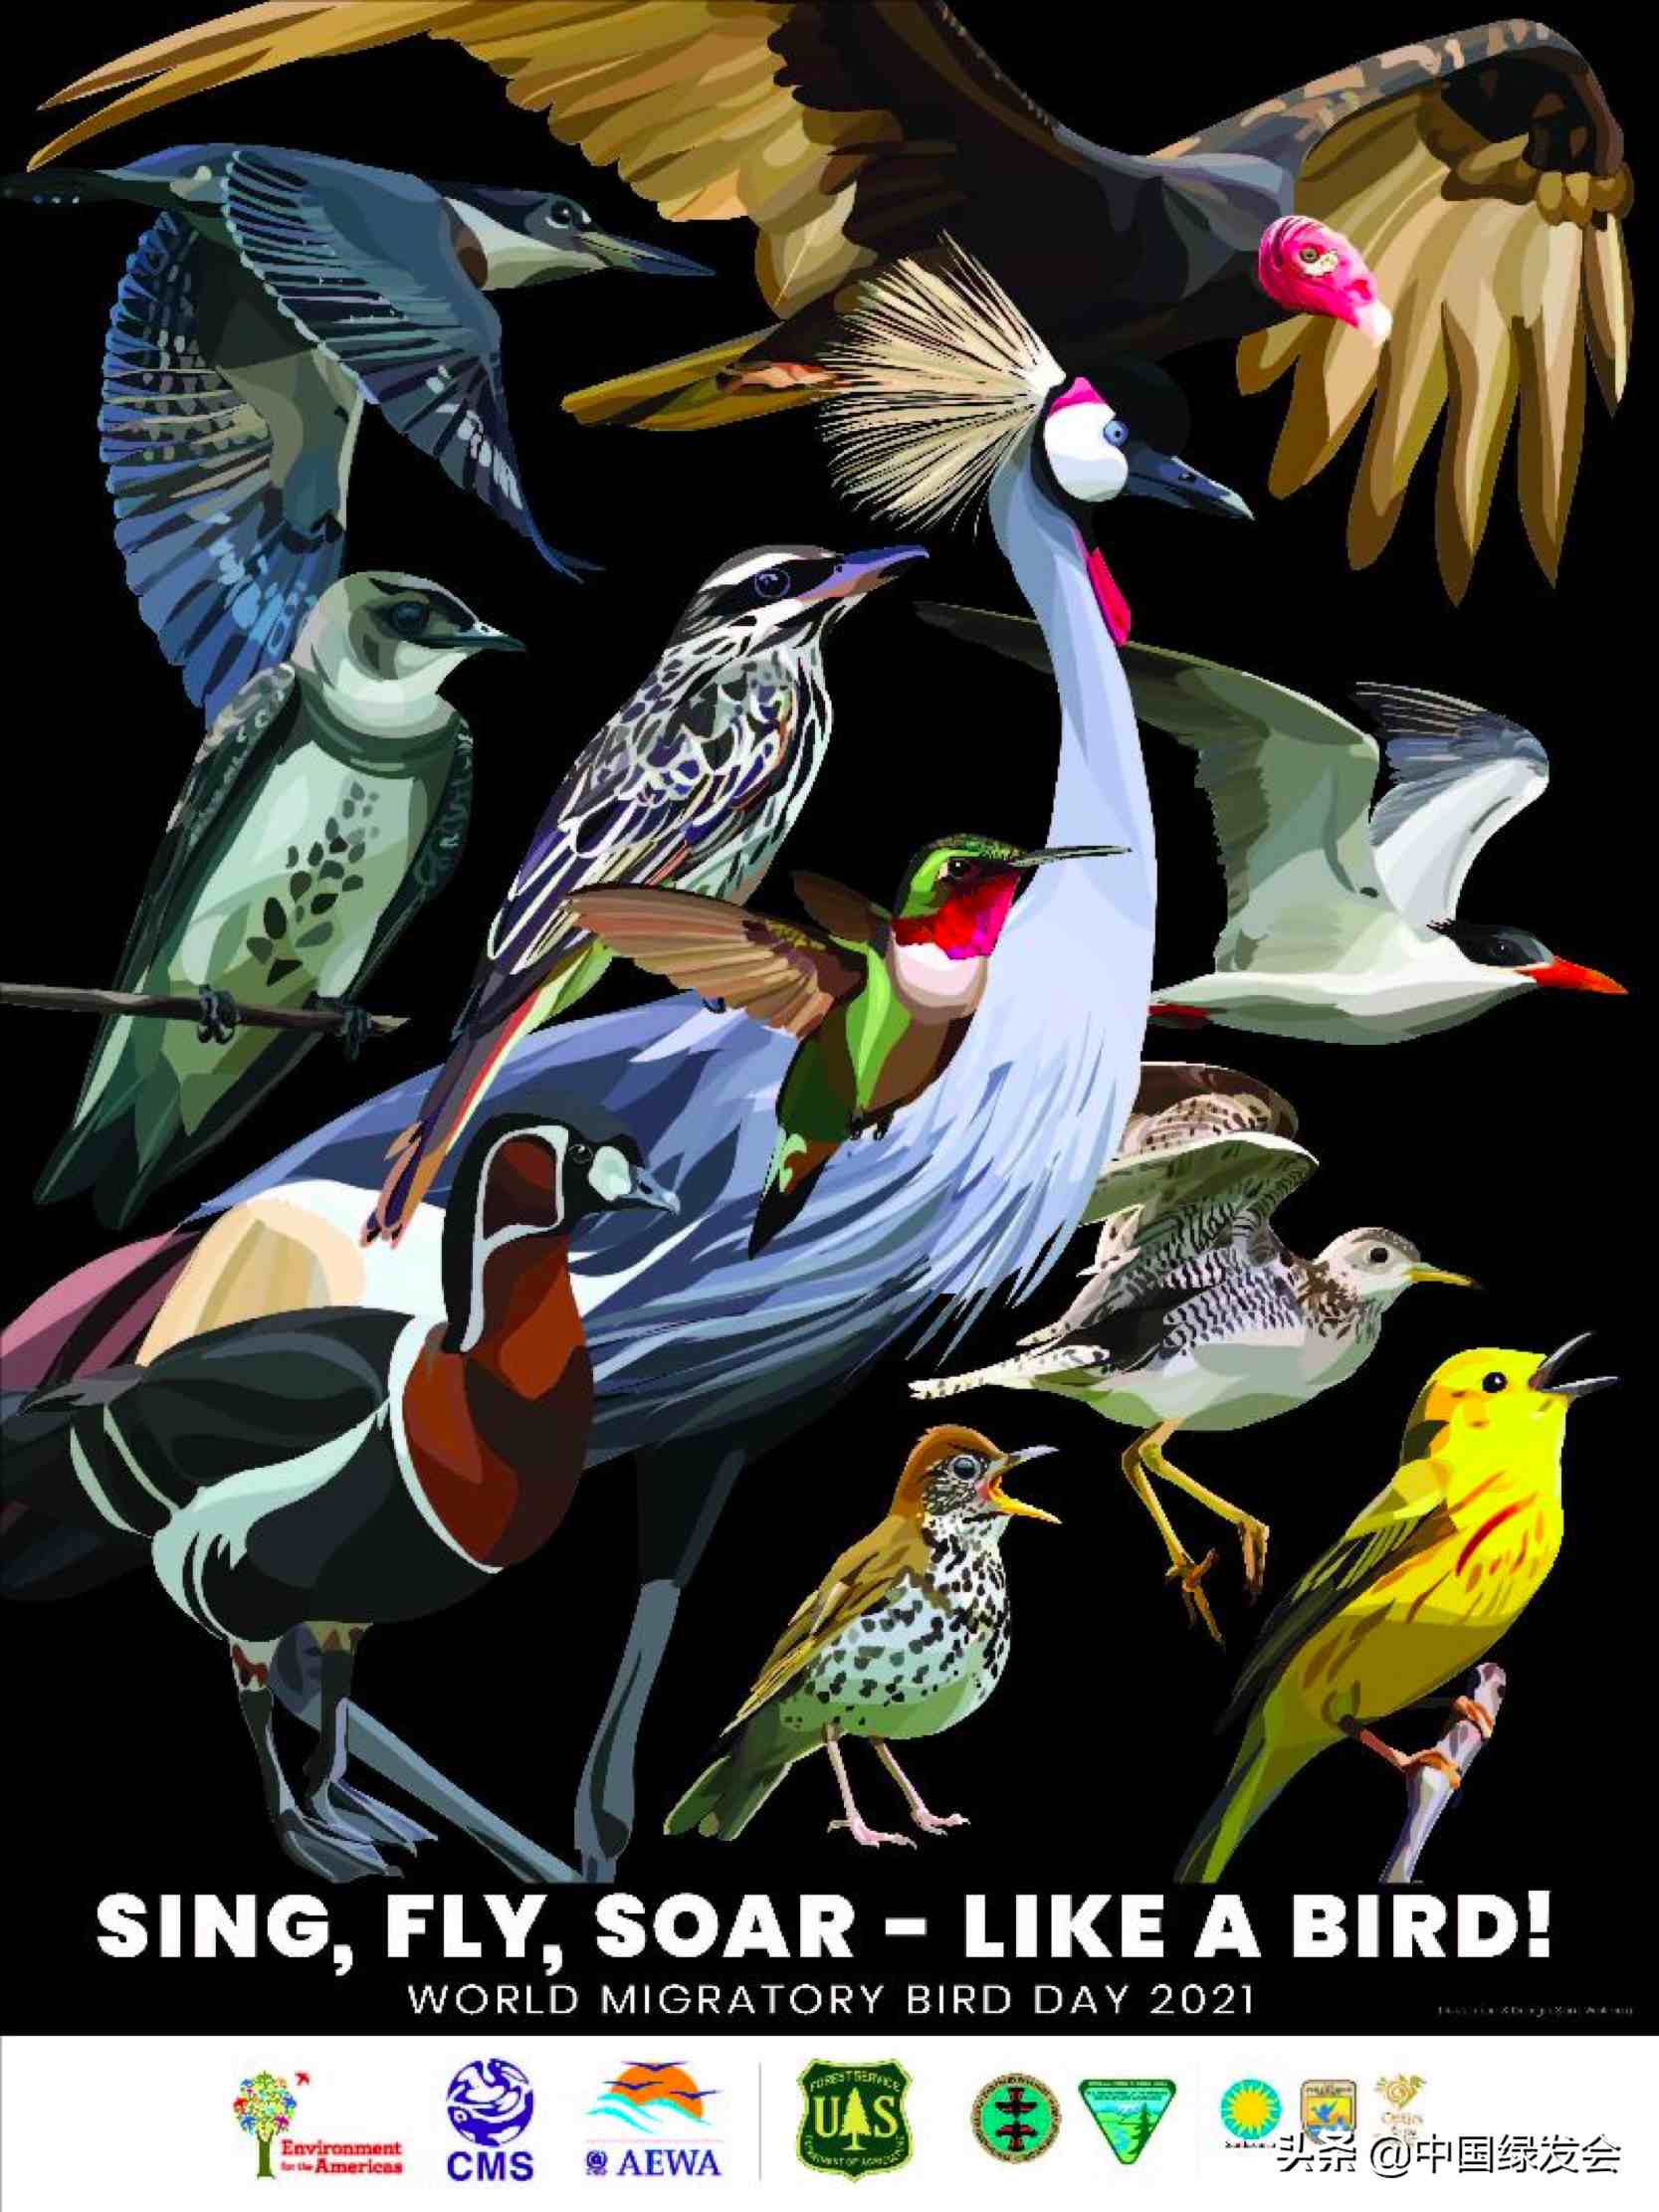 5月8日“世界候鸟日”，像鸟一样歌唱、翱翔